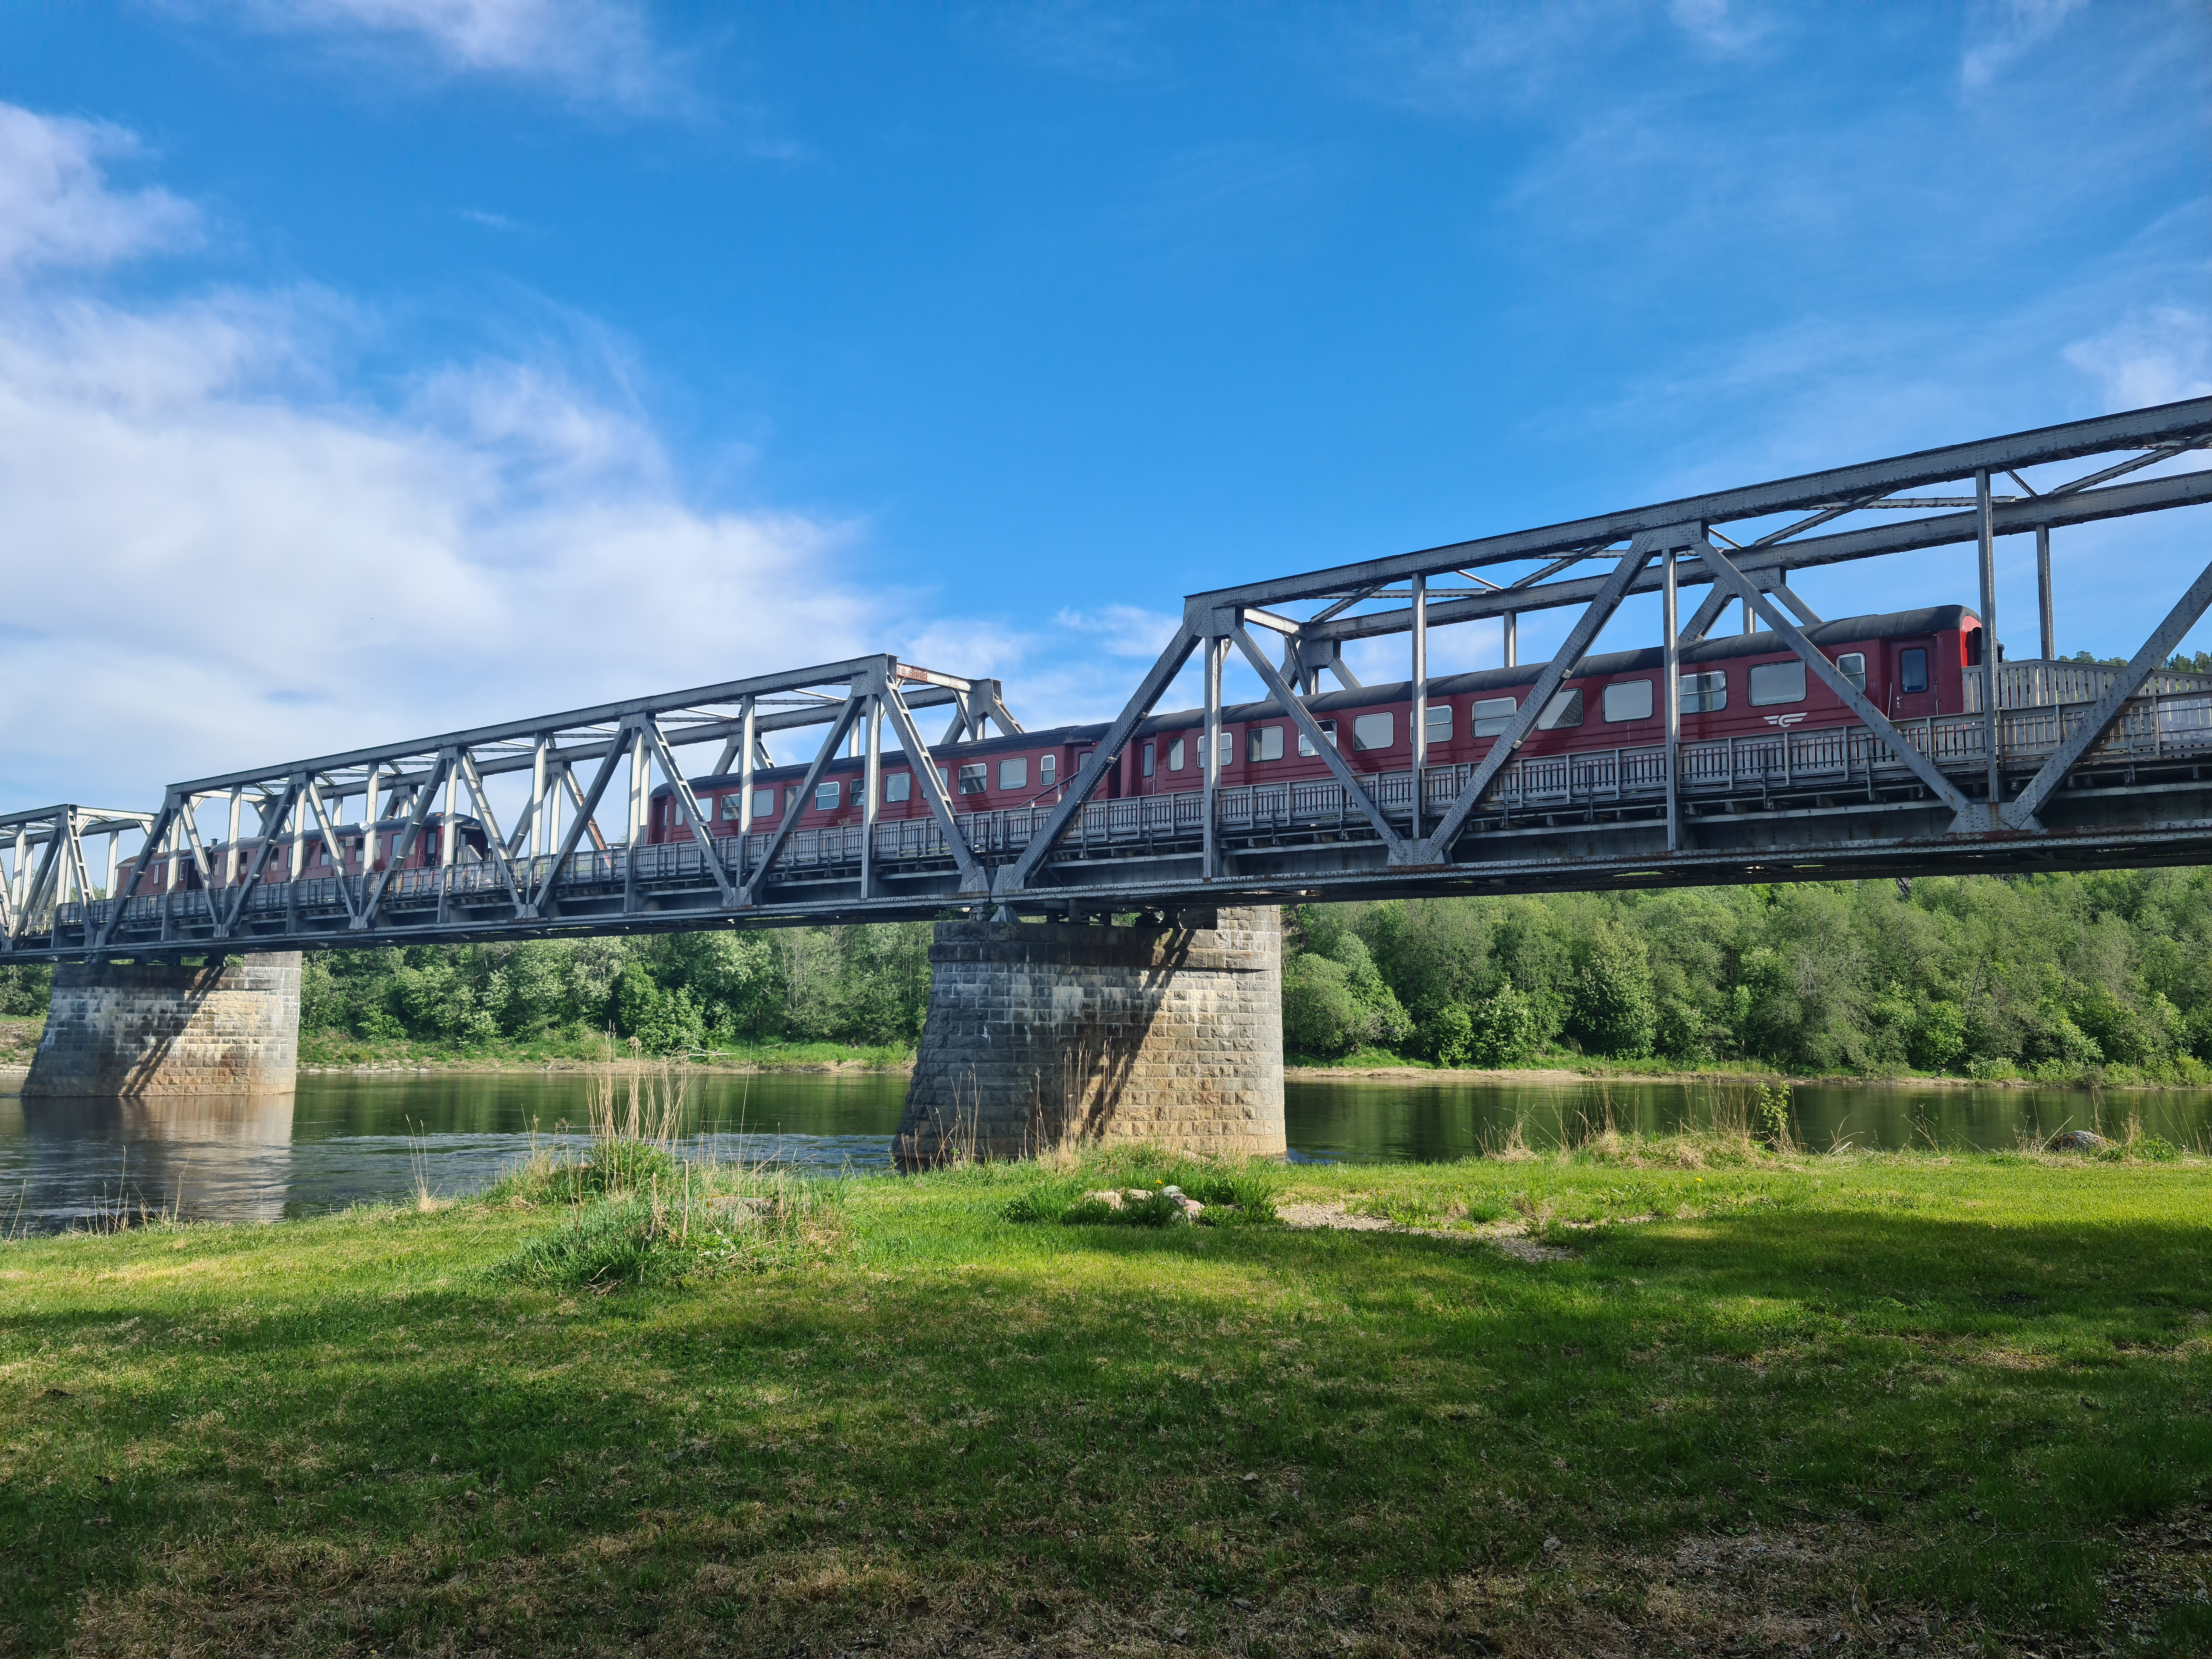 jernbanetog som er parkert på en bru over en elv